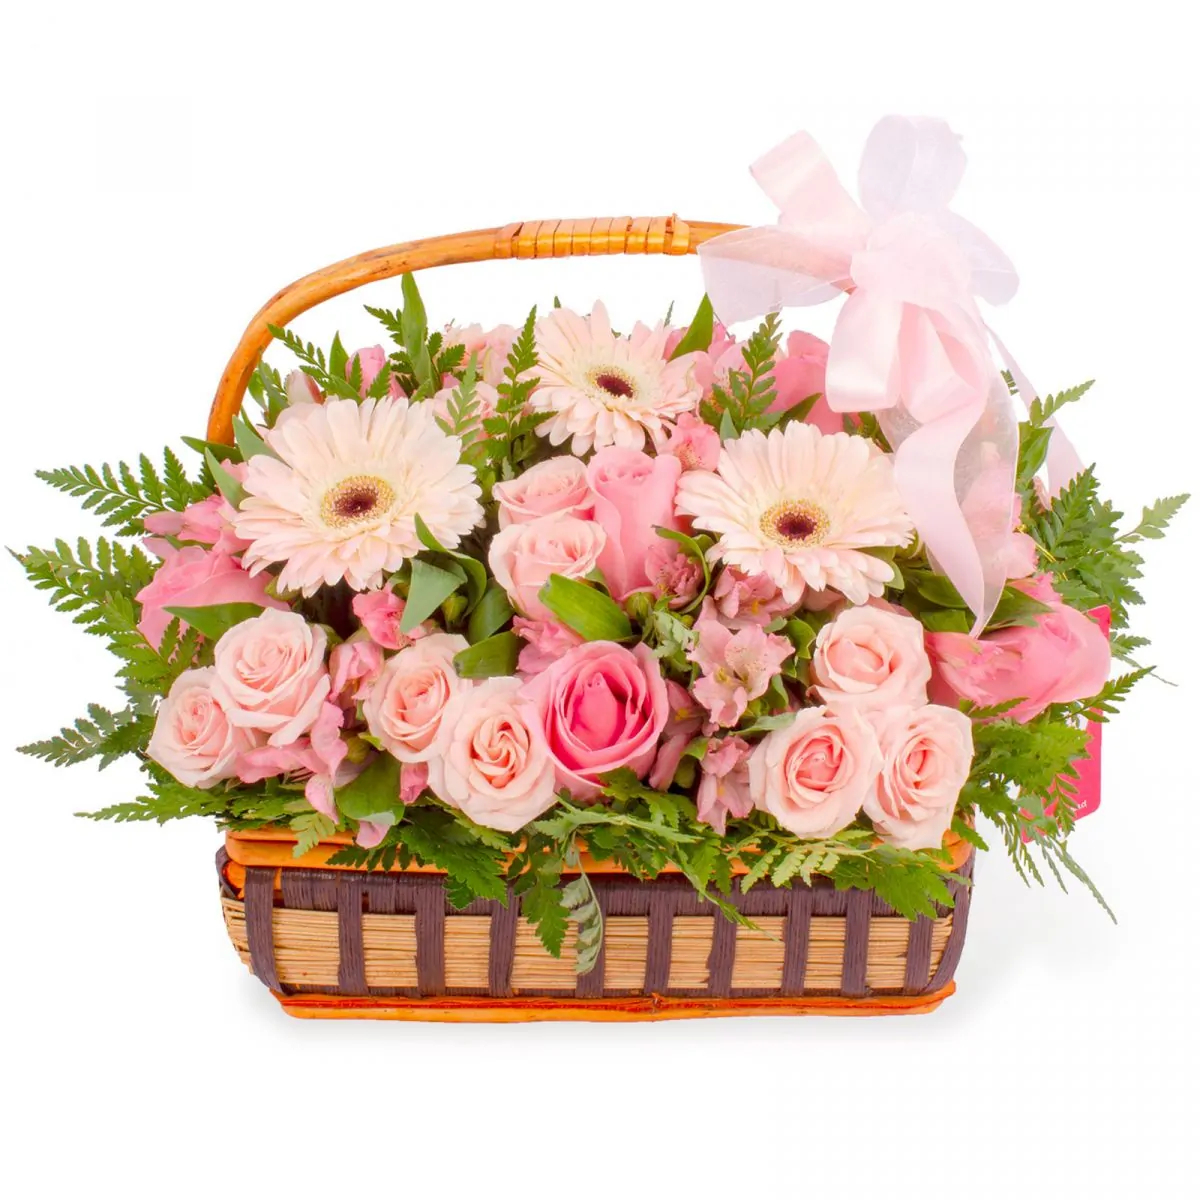 Foto principal Constanza Rosado - Arreglo floral en canasto con gerberas, rosas, minirosas y astromelias rosadas